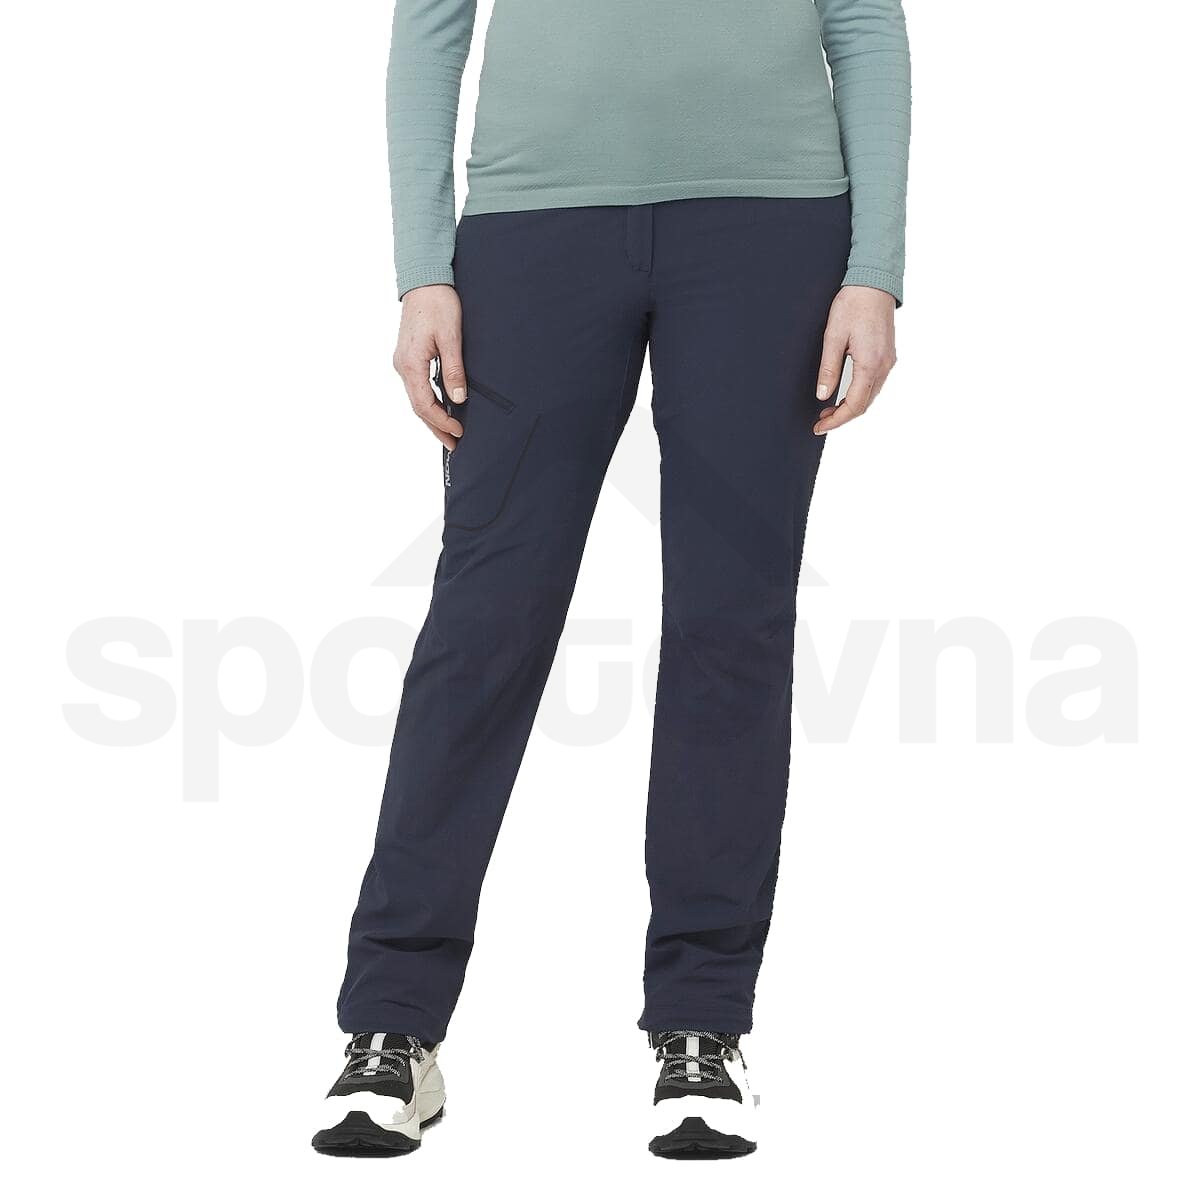 Kalhoty Salomon WAYFARER PANTS W - modrá (standardní délka)